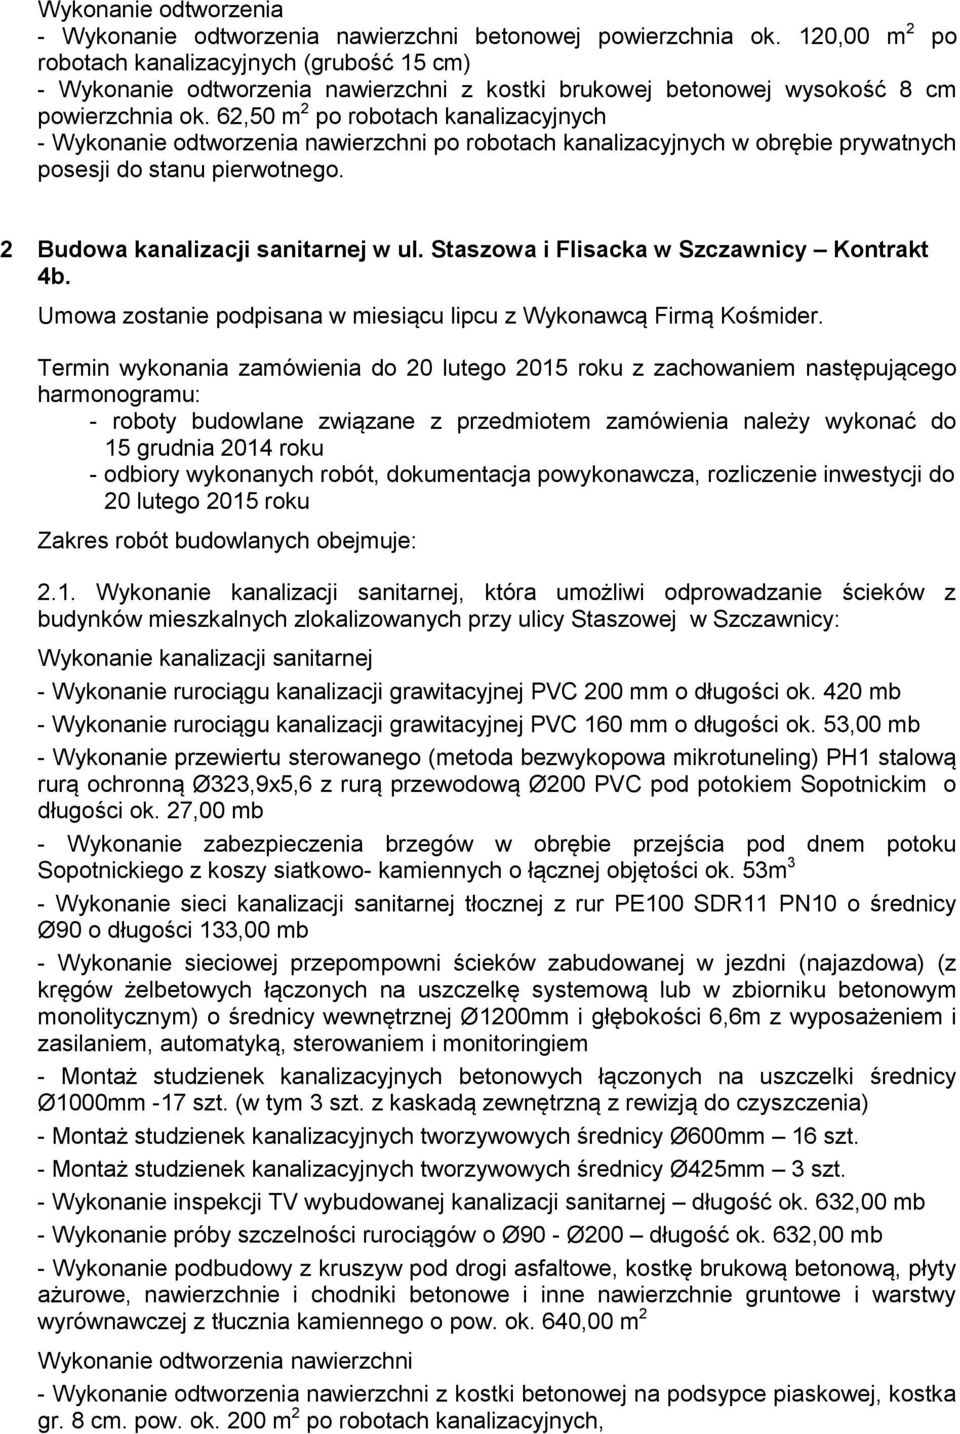 Staszowa i Flisacka w Szczawnicy Kontrakt 4b. Umowa zostanie podpisana w miesiącu lipcu z Wykonawcą Firmą Kośmider.